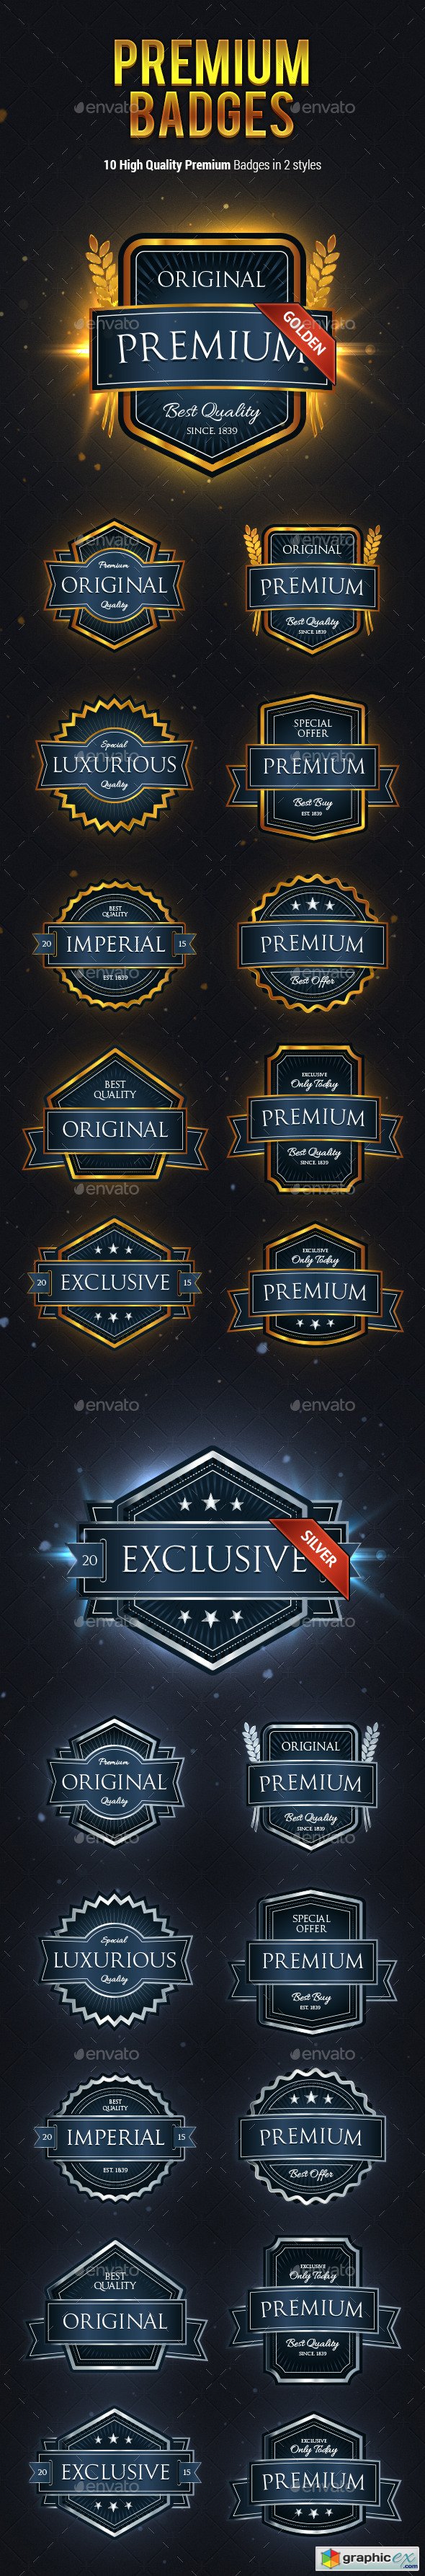 10 High Quality Premium Badges